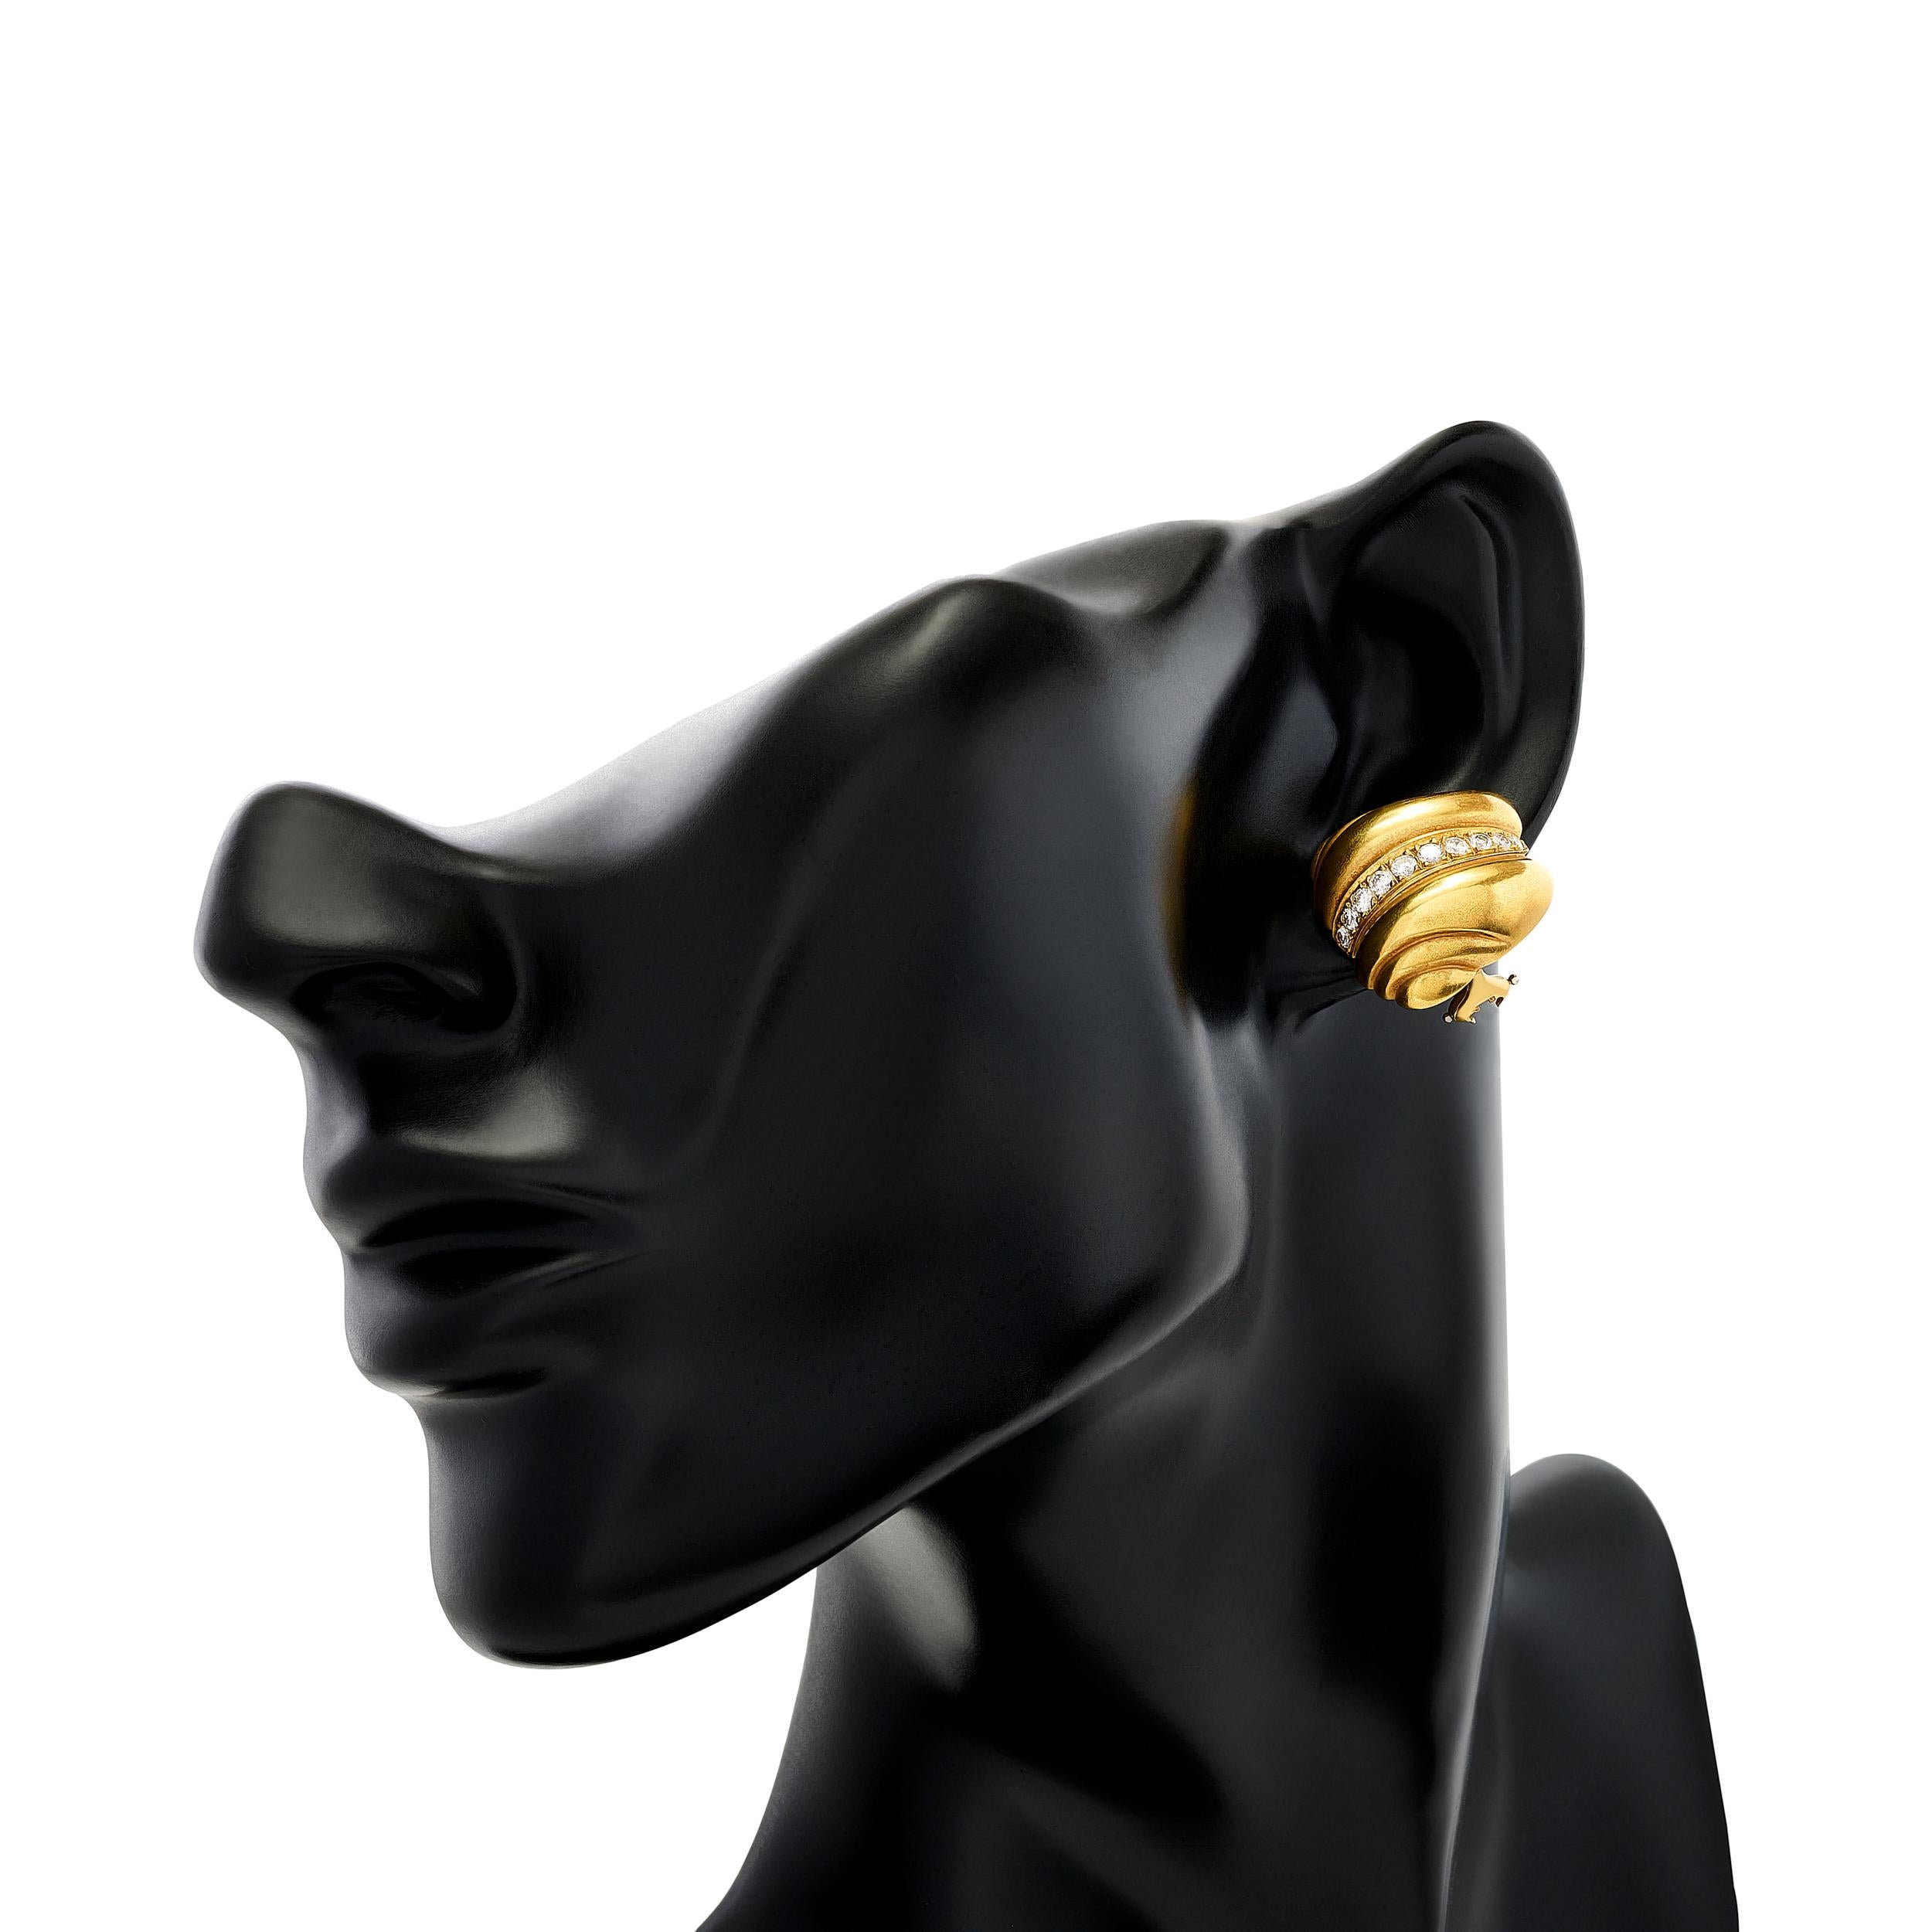 B. KIESELSTEIN-CORD propose des boucles d'oreilles à crête en diamant et en or qui allient sans effort la sophistication à une touche d'allure avant-gardiste.

Il y a un total de 20 diamants ronds qui pèsent environ 0,50 carat ; ils sont de couleur